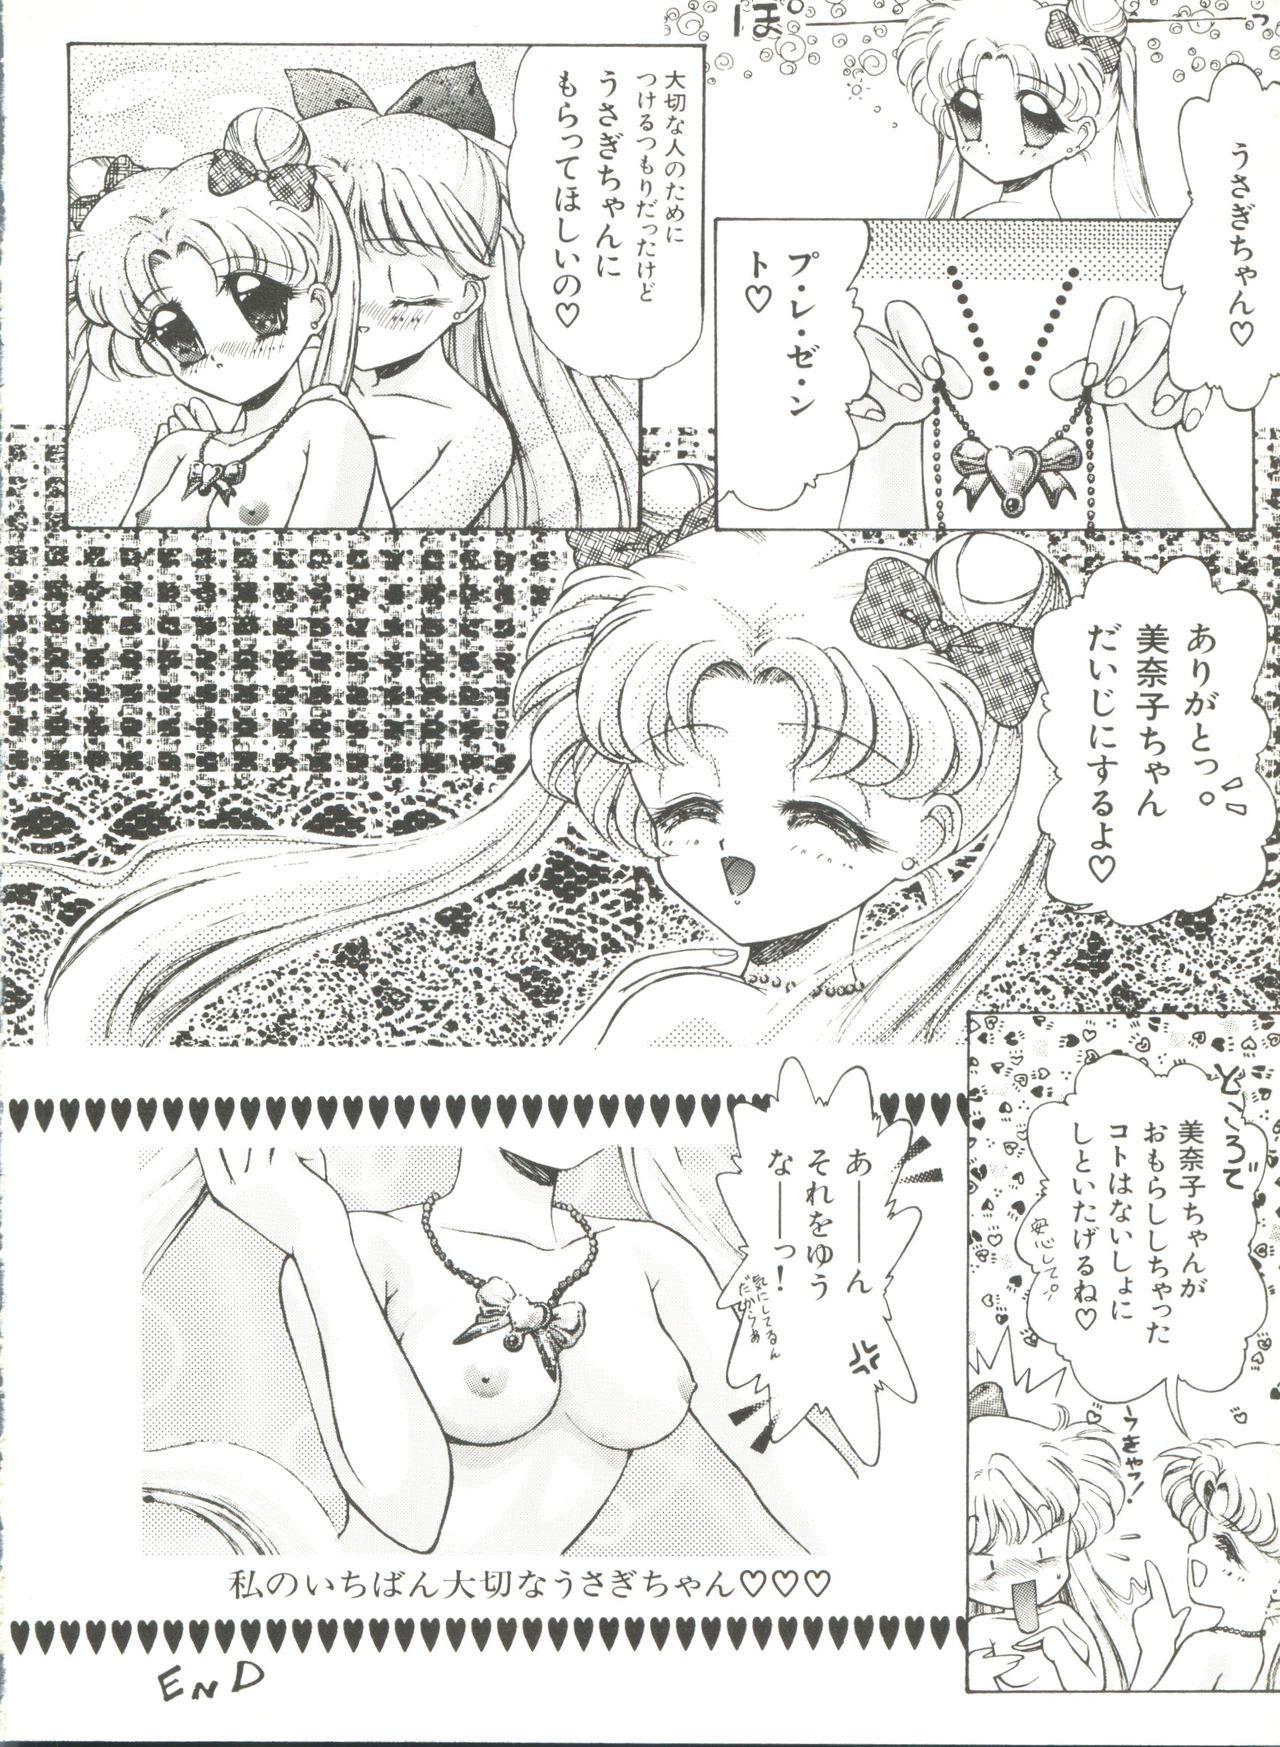 Bishoujo Doujinshi Anthology 8 - Moon Paradise 5 Tsuki no Rakuen 92